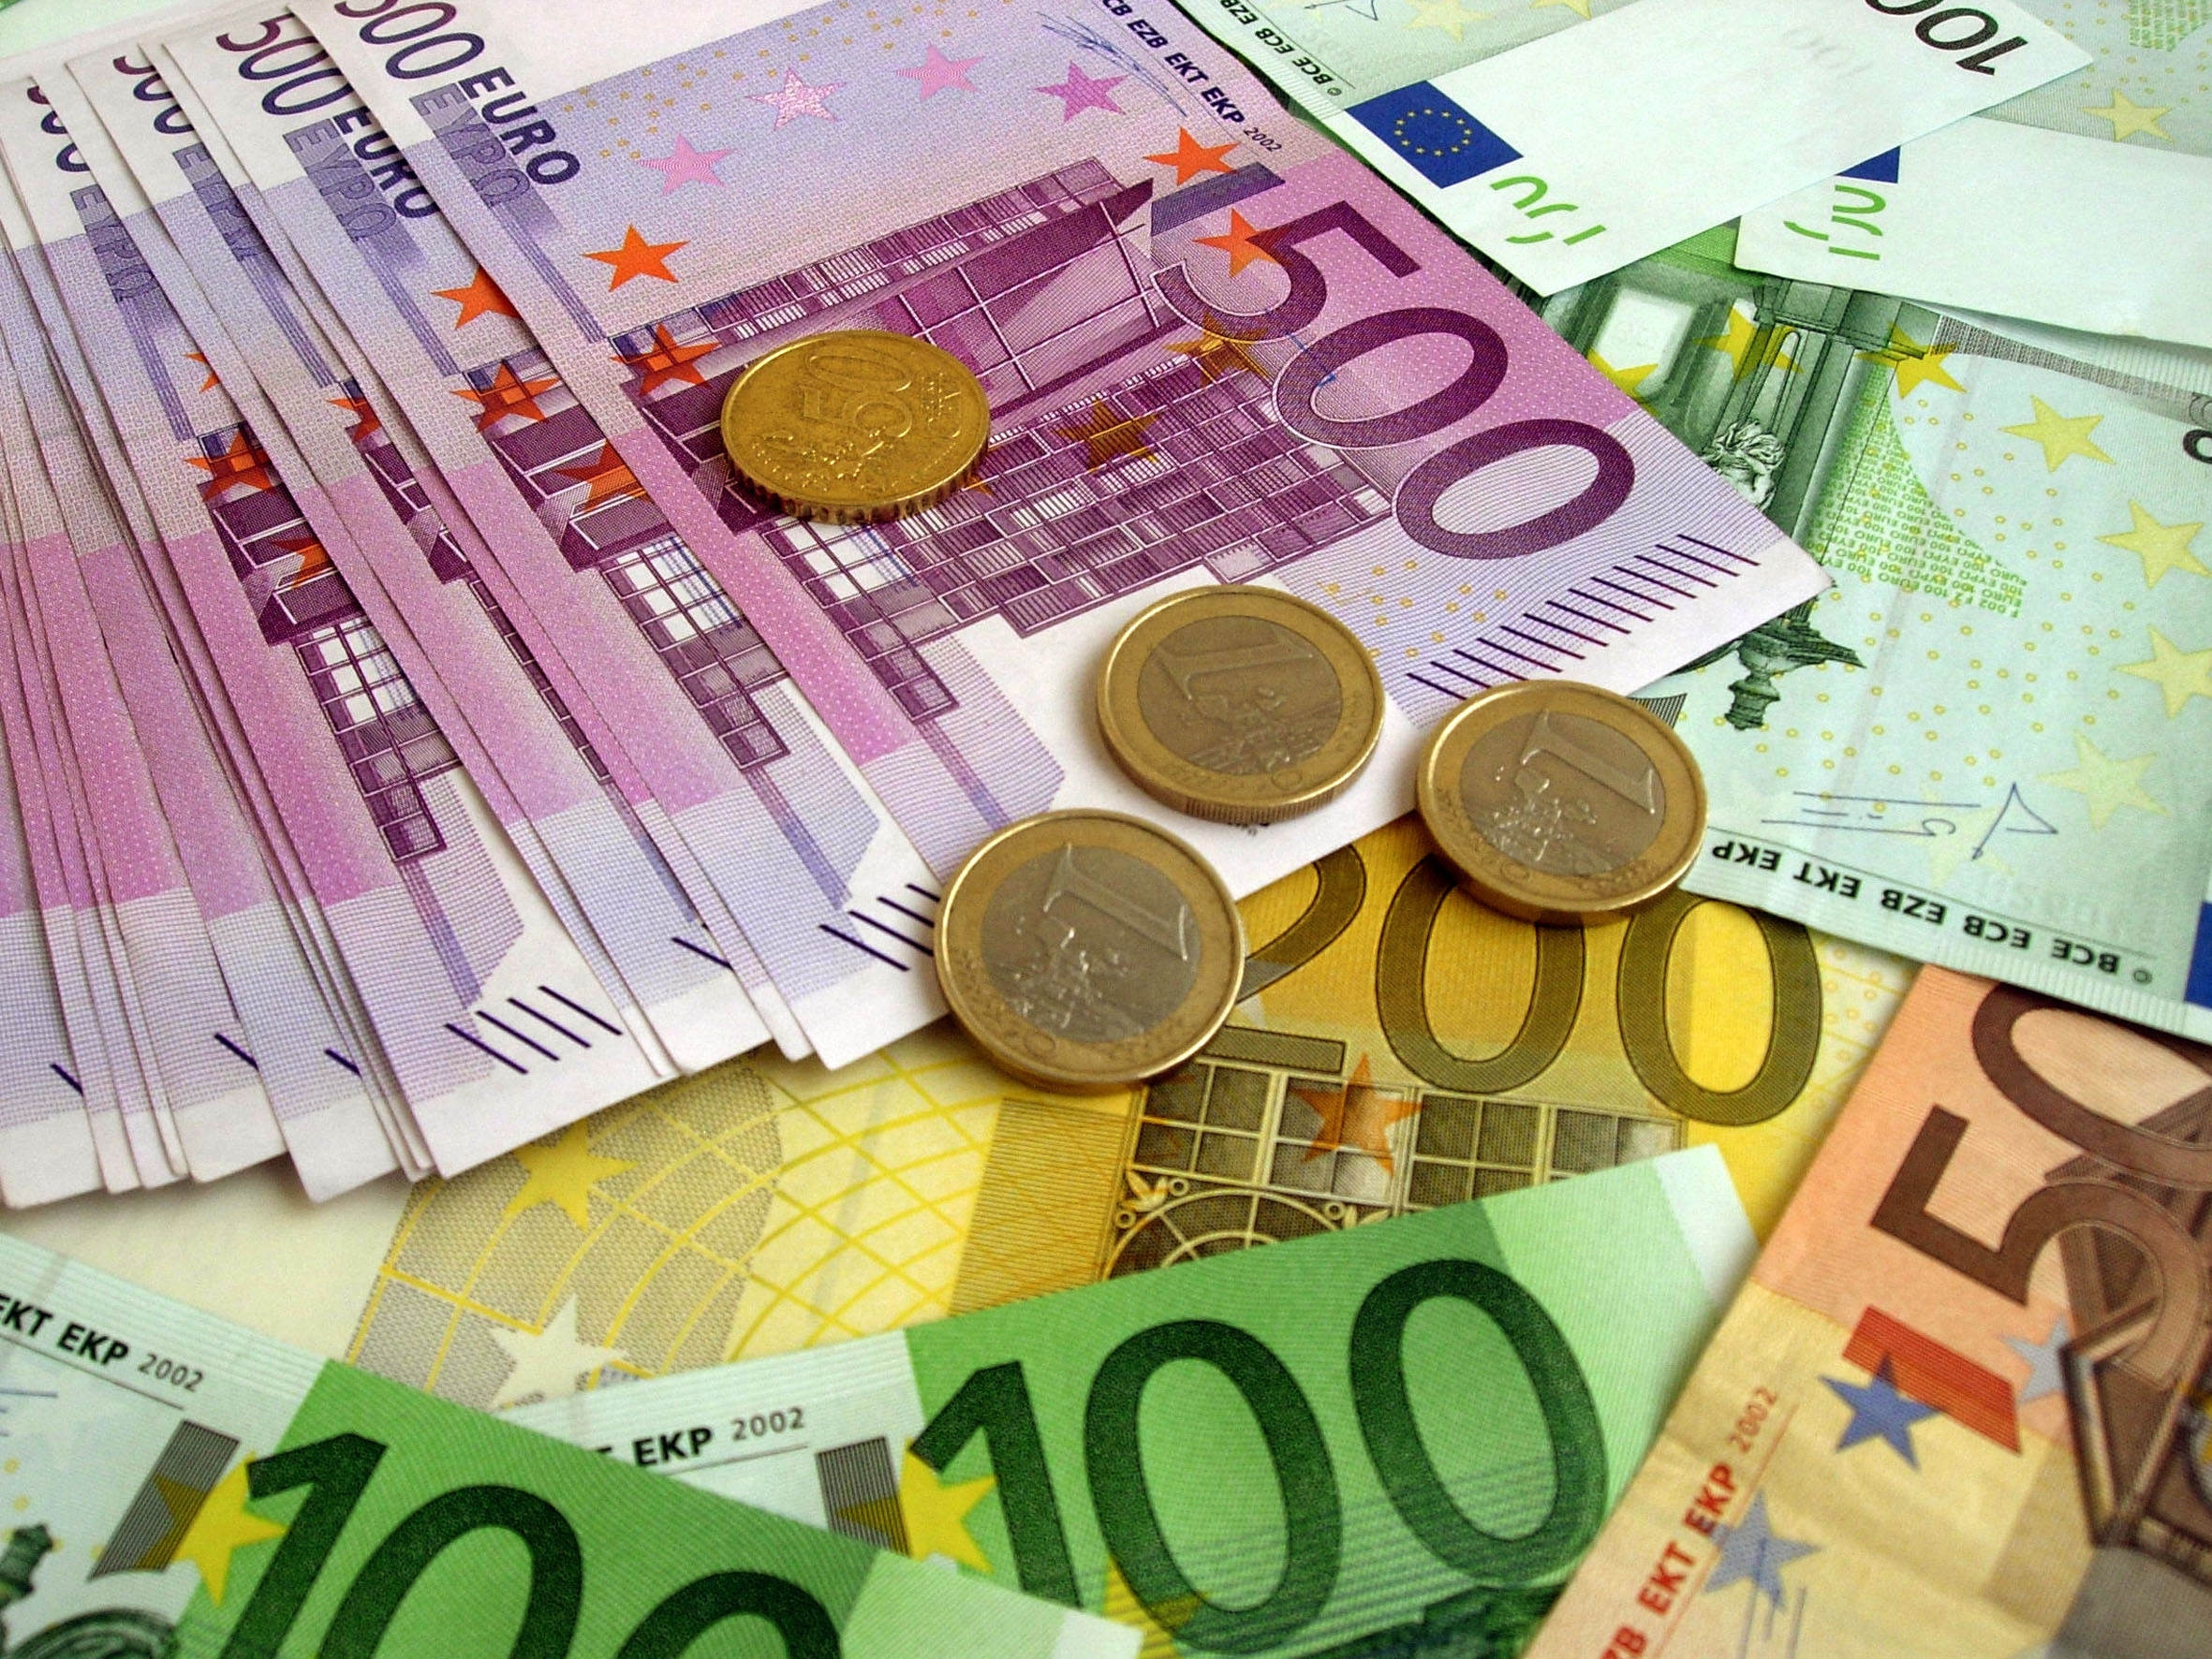 money, euro, coins, miscellanea, banknotes, miscellaneous, bills